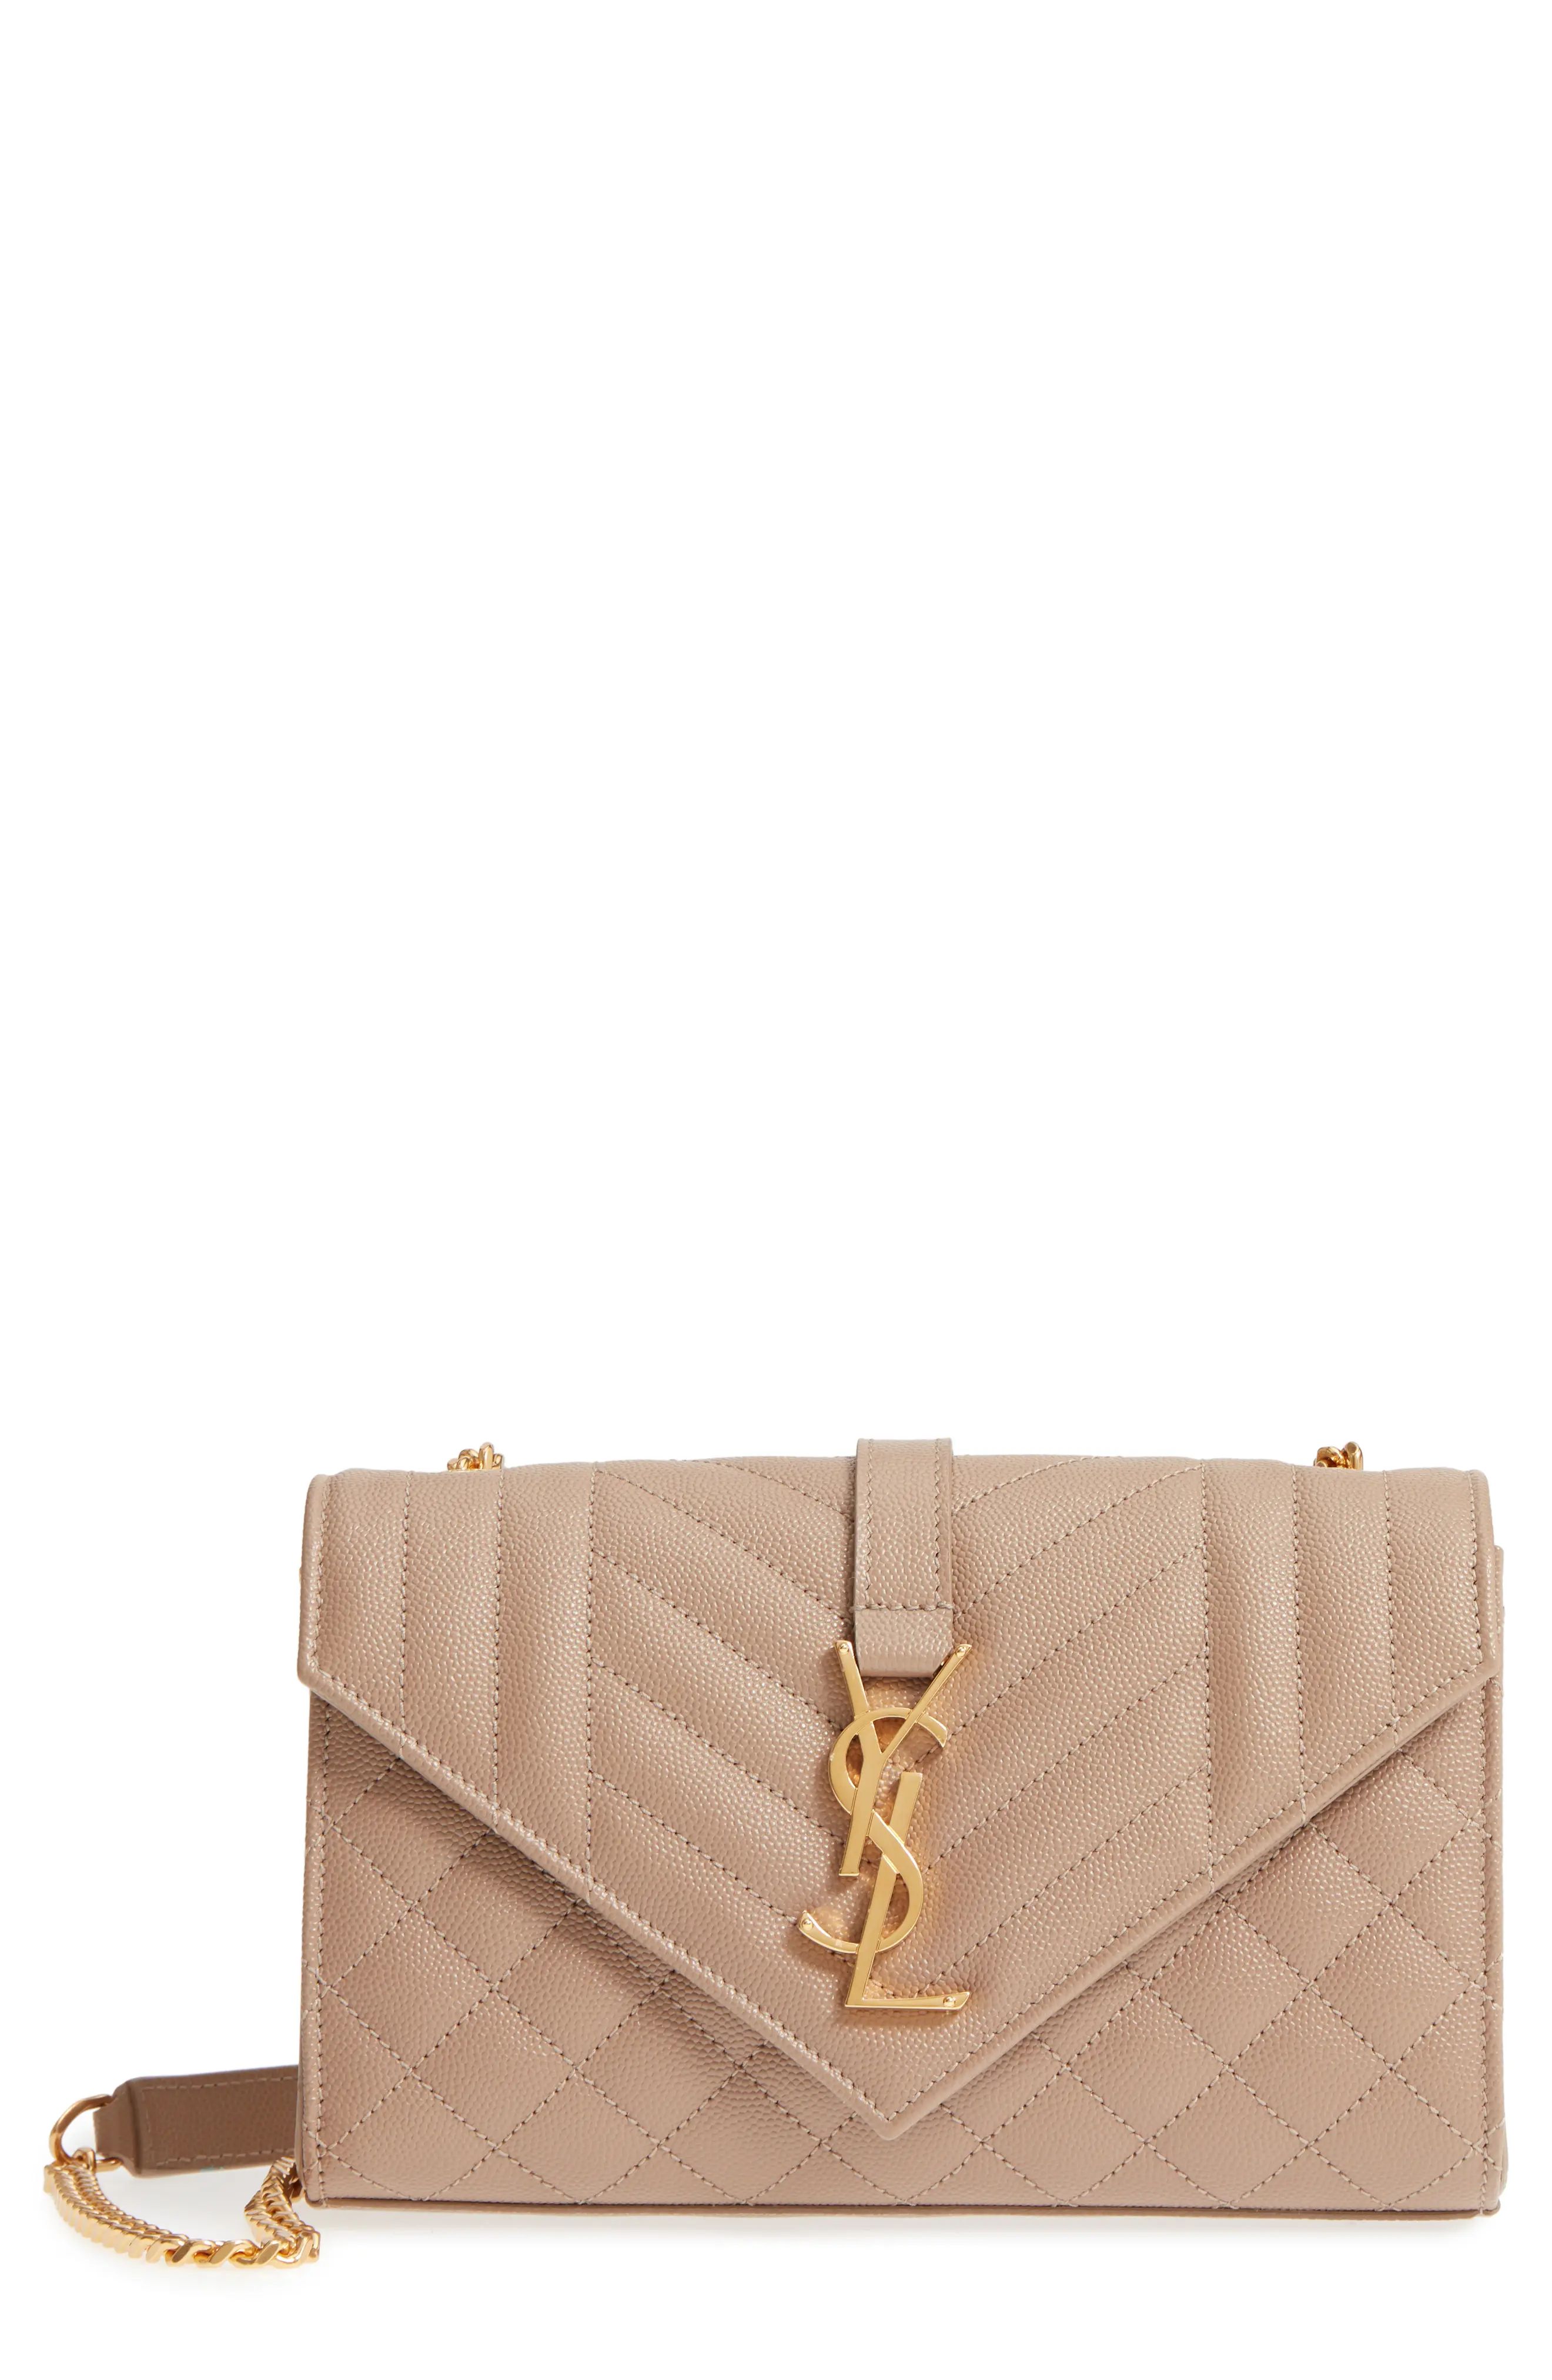 Saint Laurent Small Cassandra Leather Shoulder Bag | Nordstrom